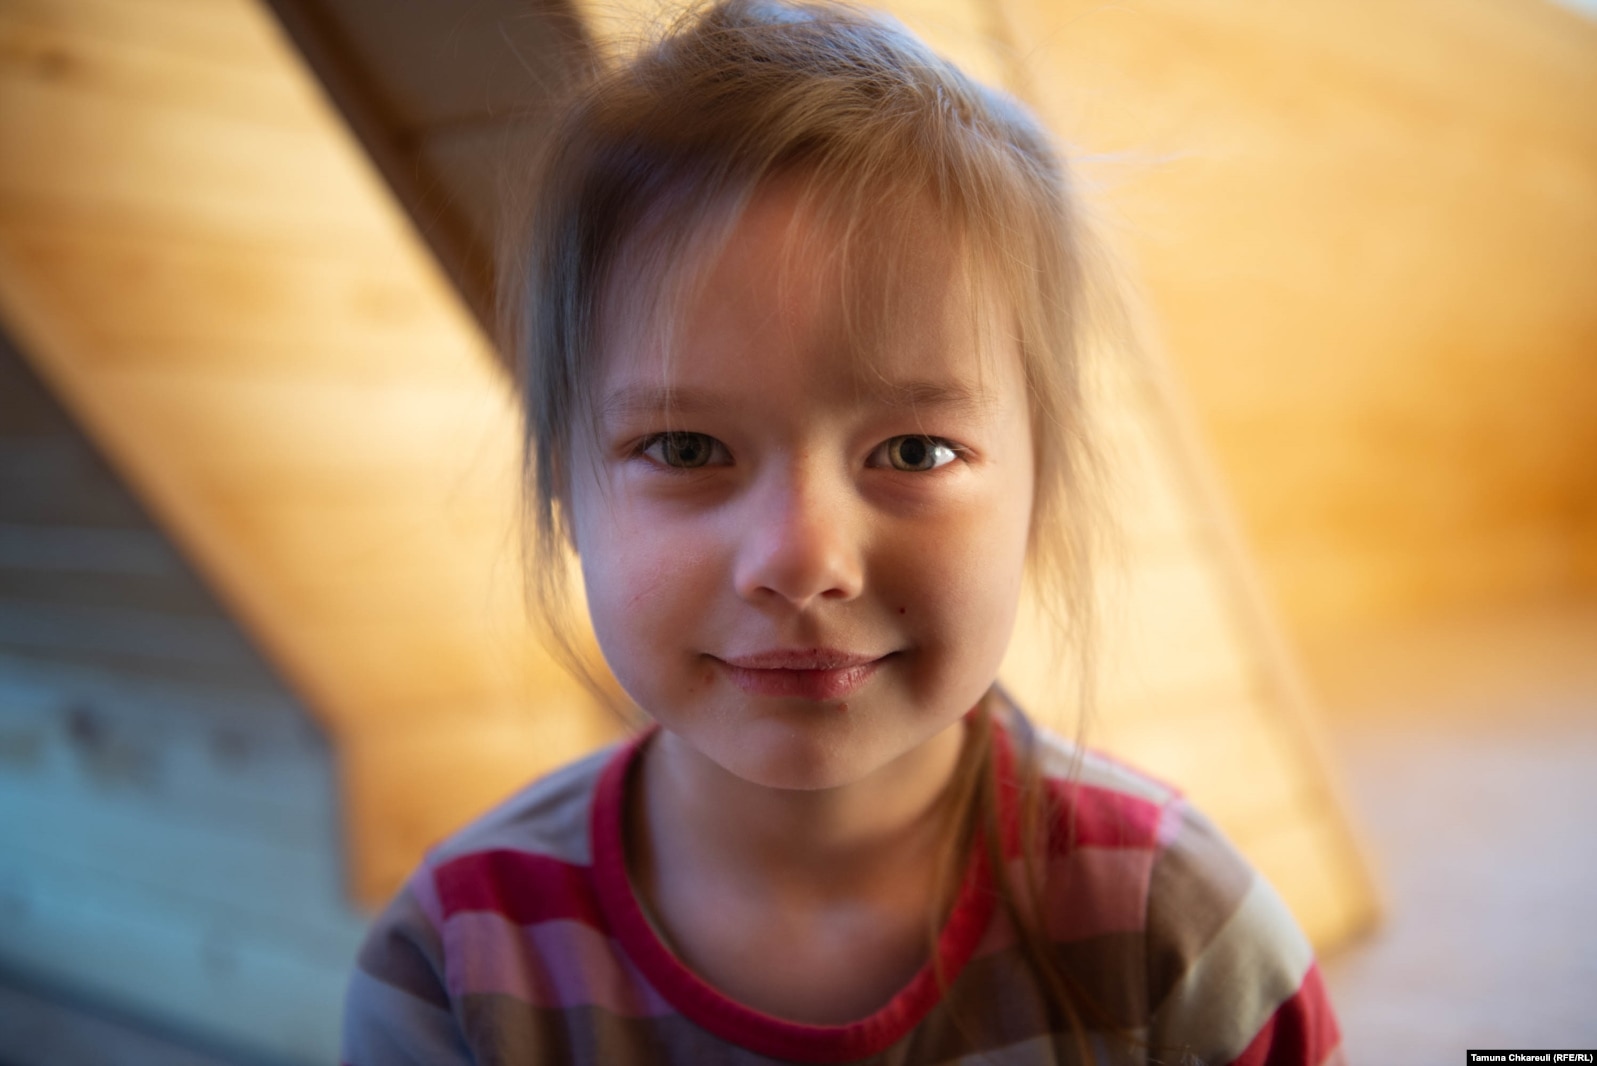 შვიდი წლის მიროსლავას პოლონეთში ყველაზე ნაკლებად უჭირს. პავლენკოების შემფარებელ პოლონურ ოჯახში ბავშვებს უკვე ნახევრად პოლონურად ელაპარაკება.